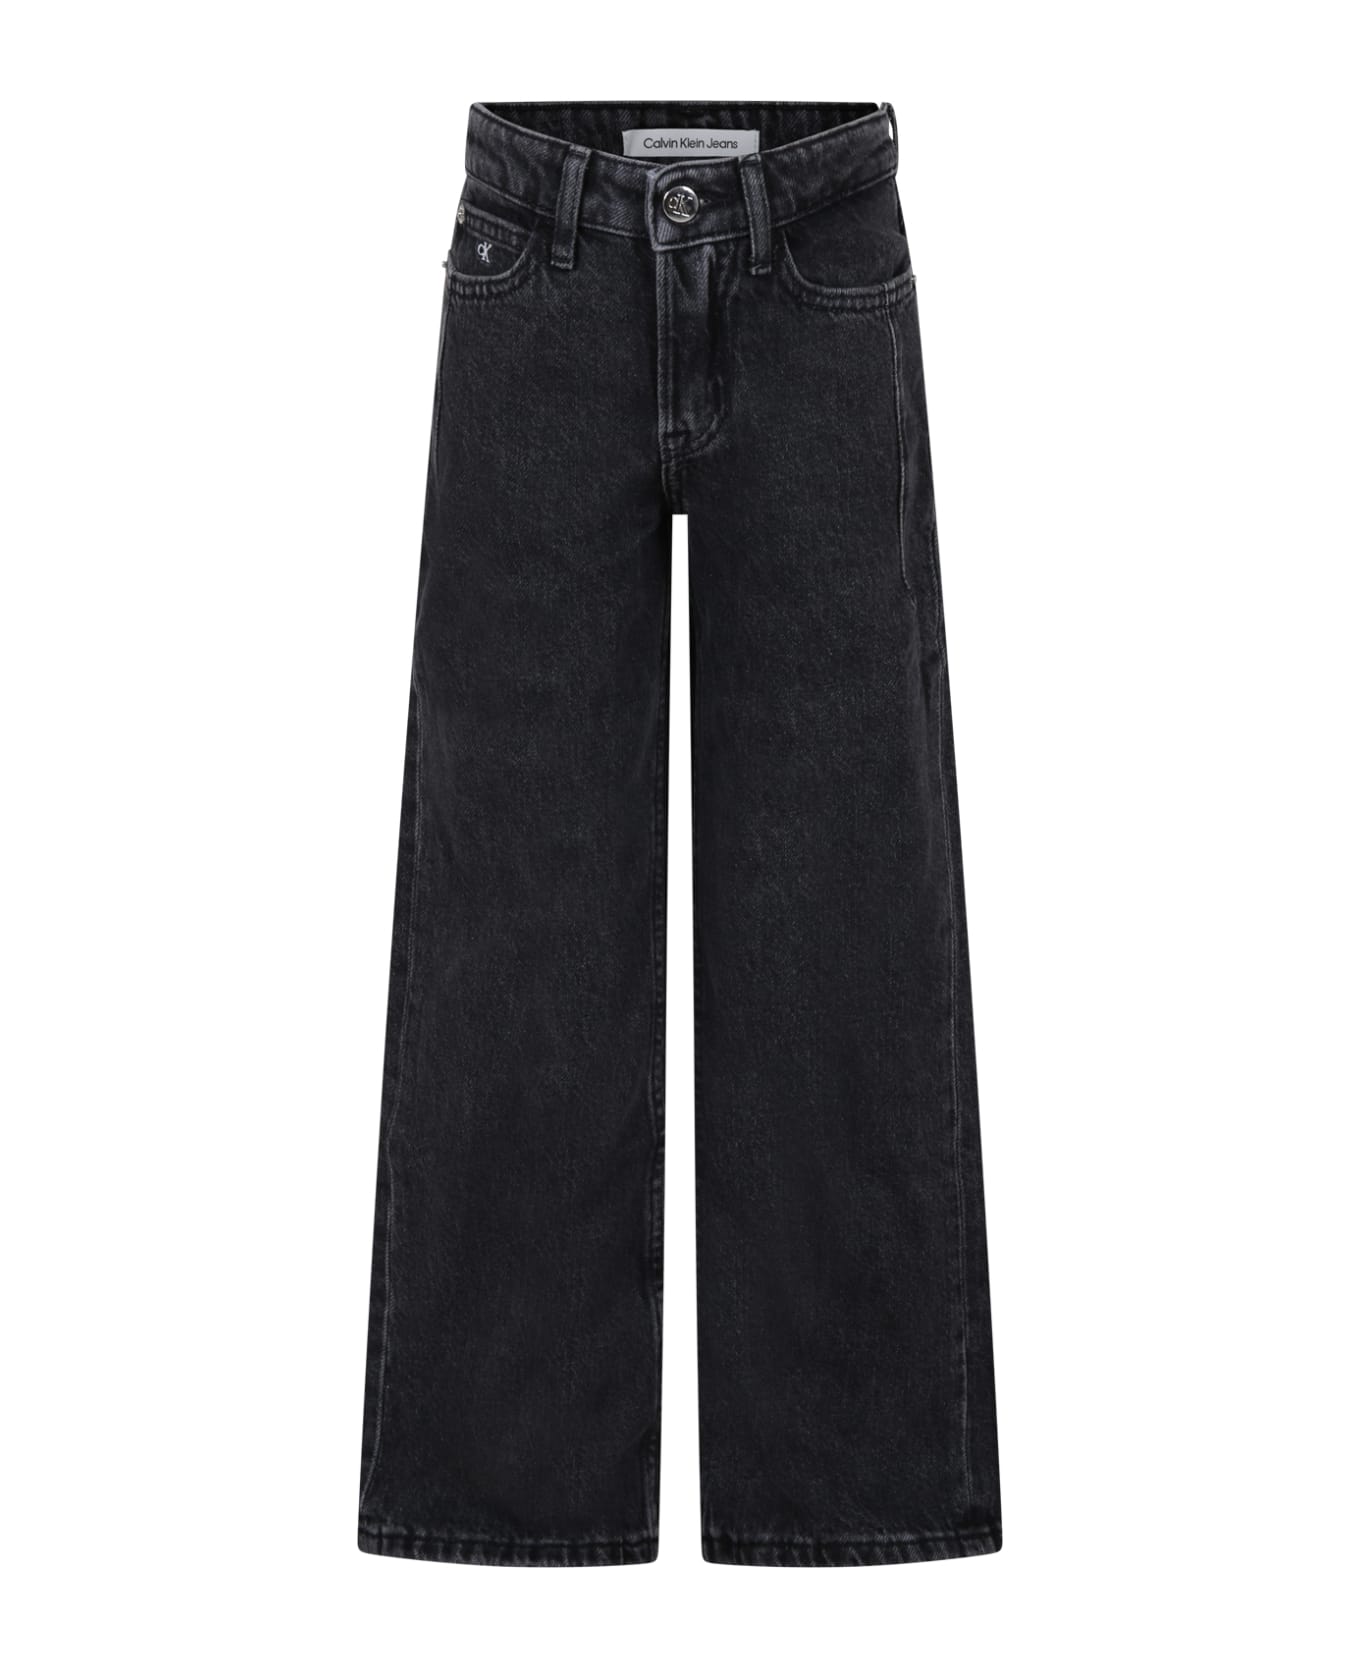 Calvin Klein Black Denim Jeans For Girl - Black